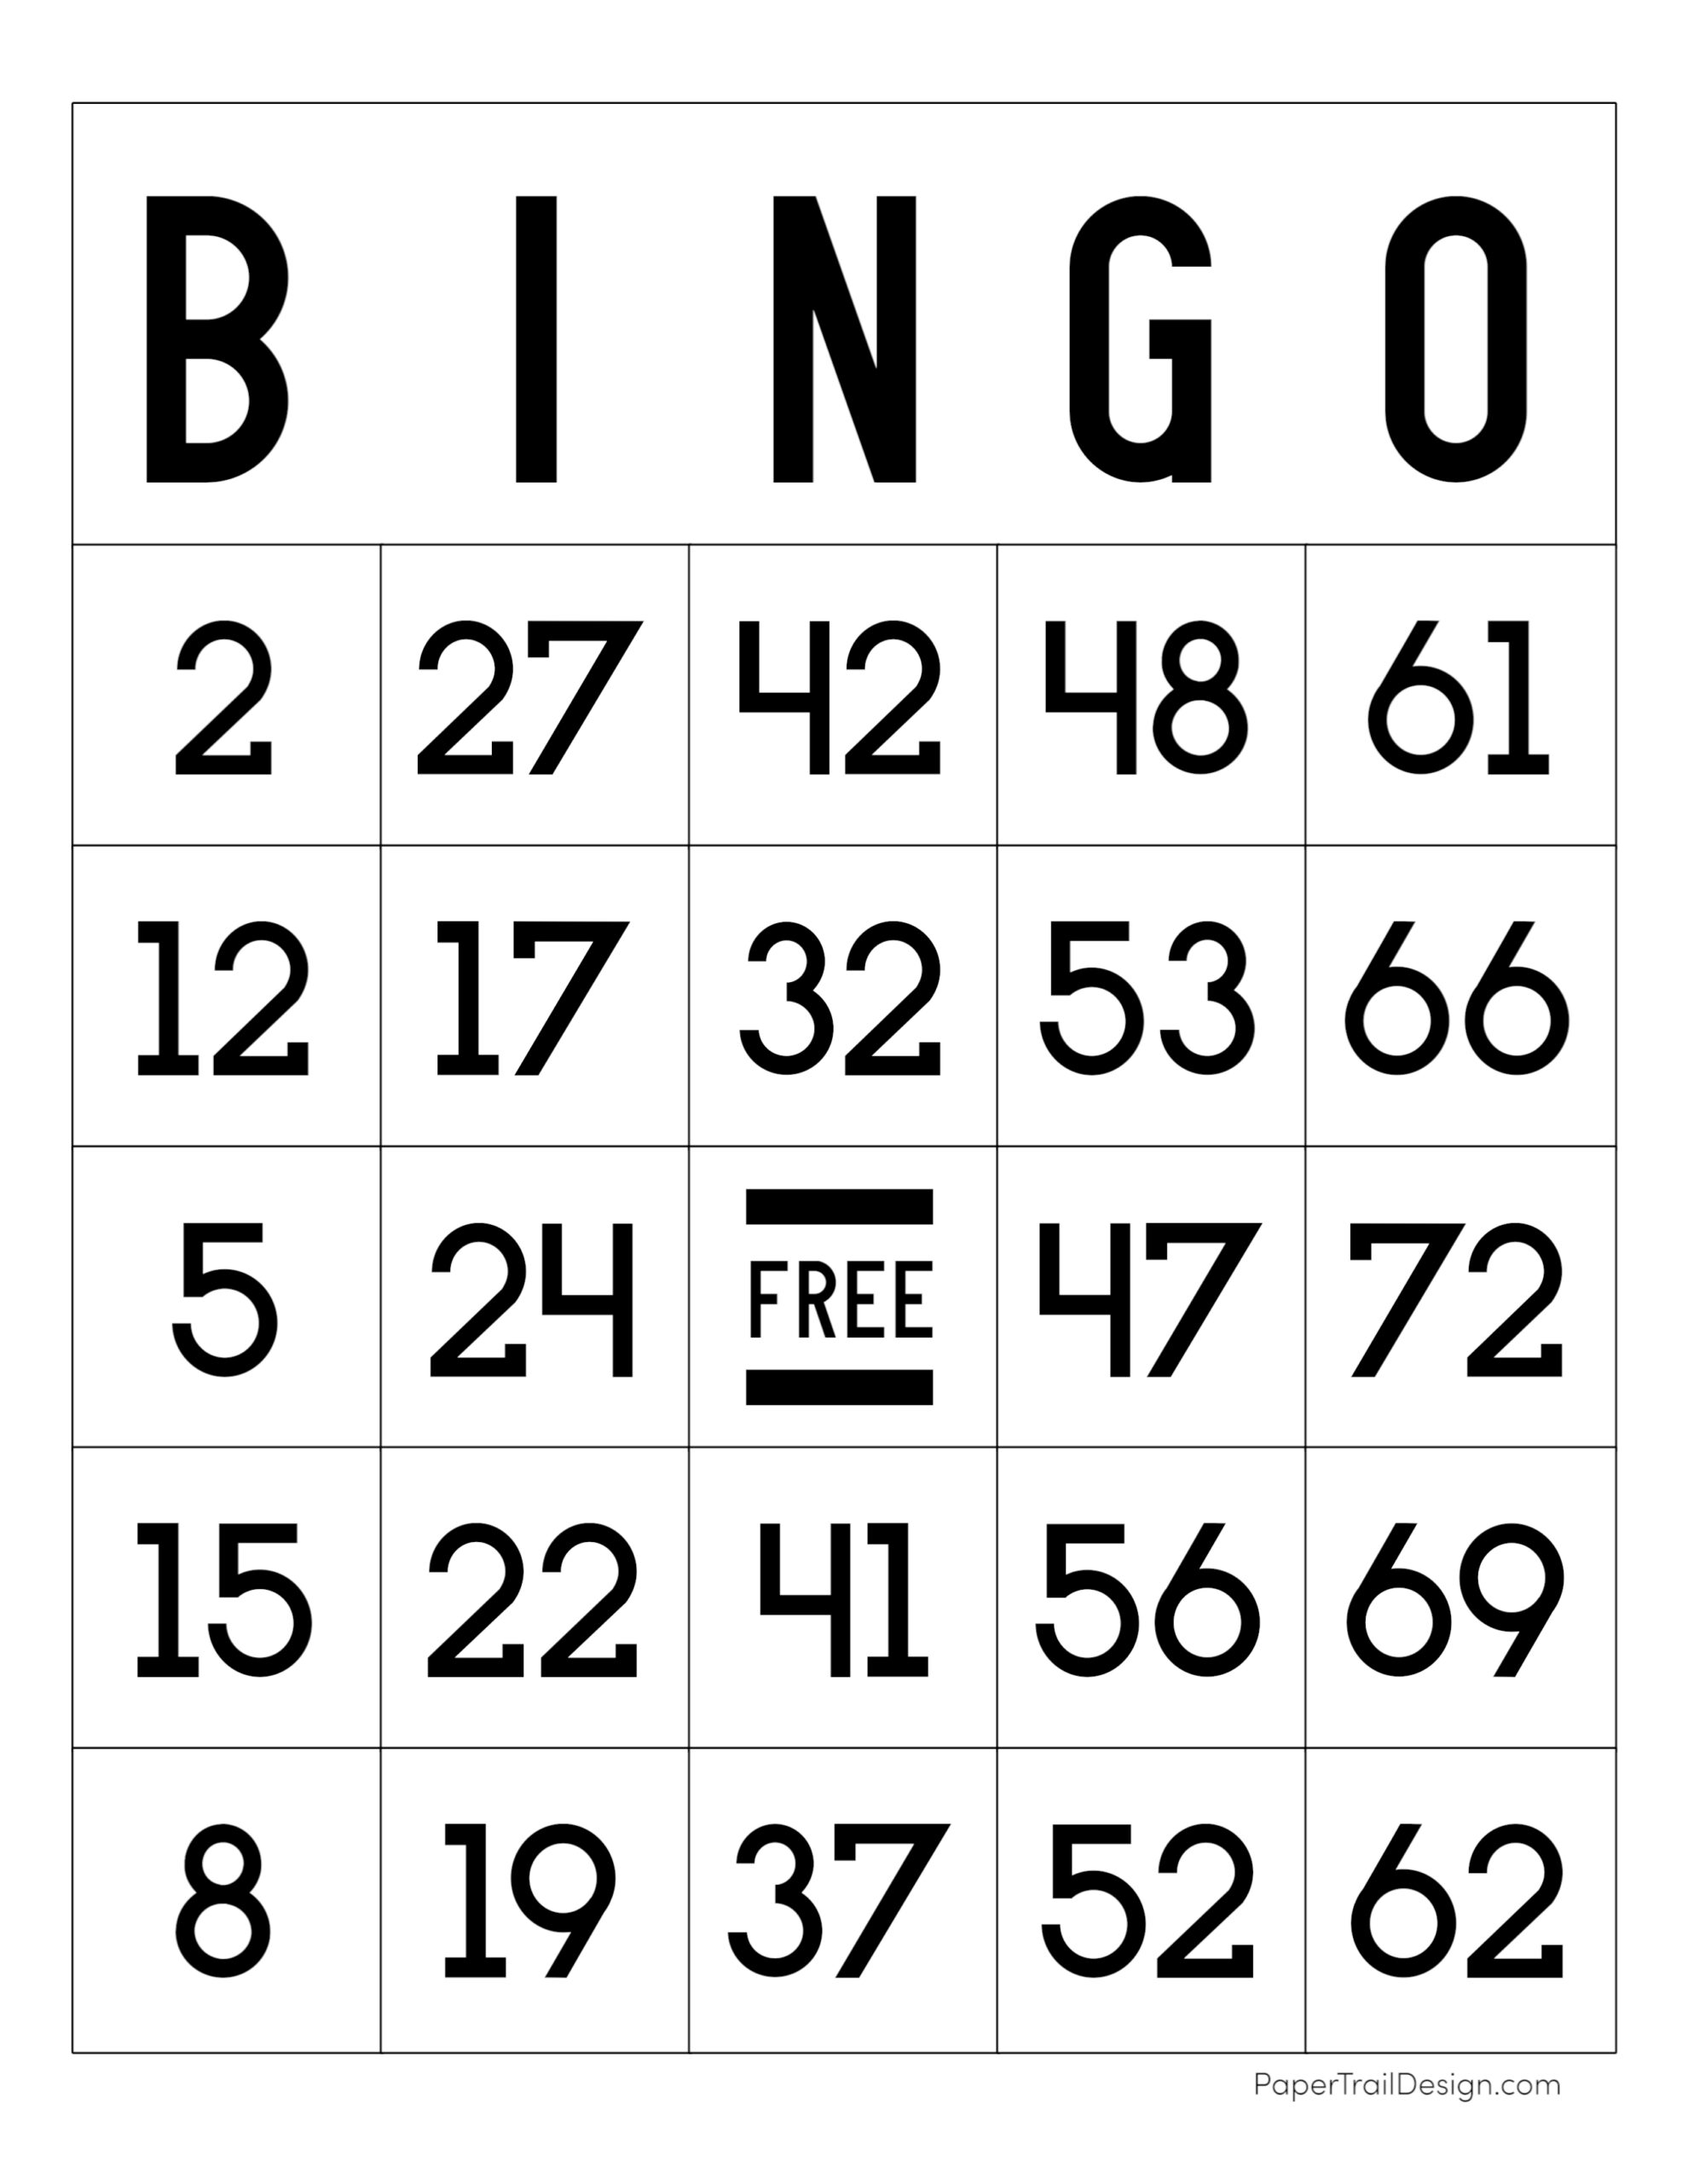 jogo de bingo show ball 3 gratis